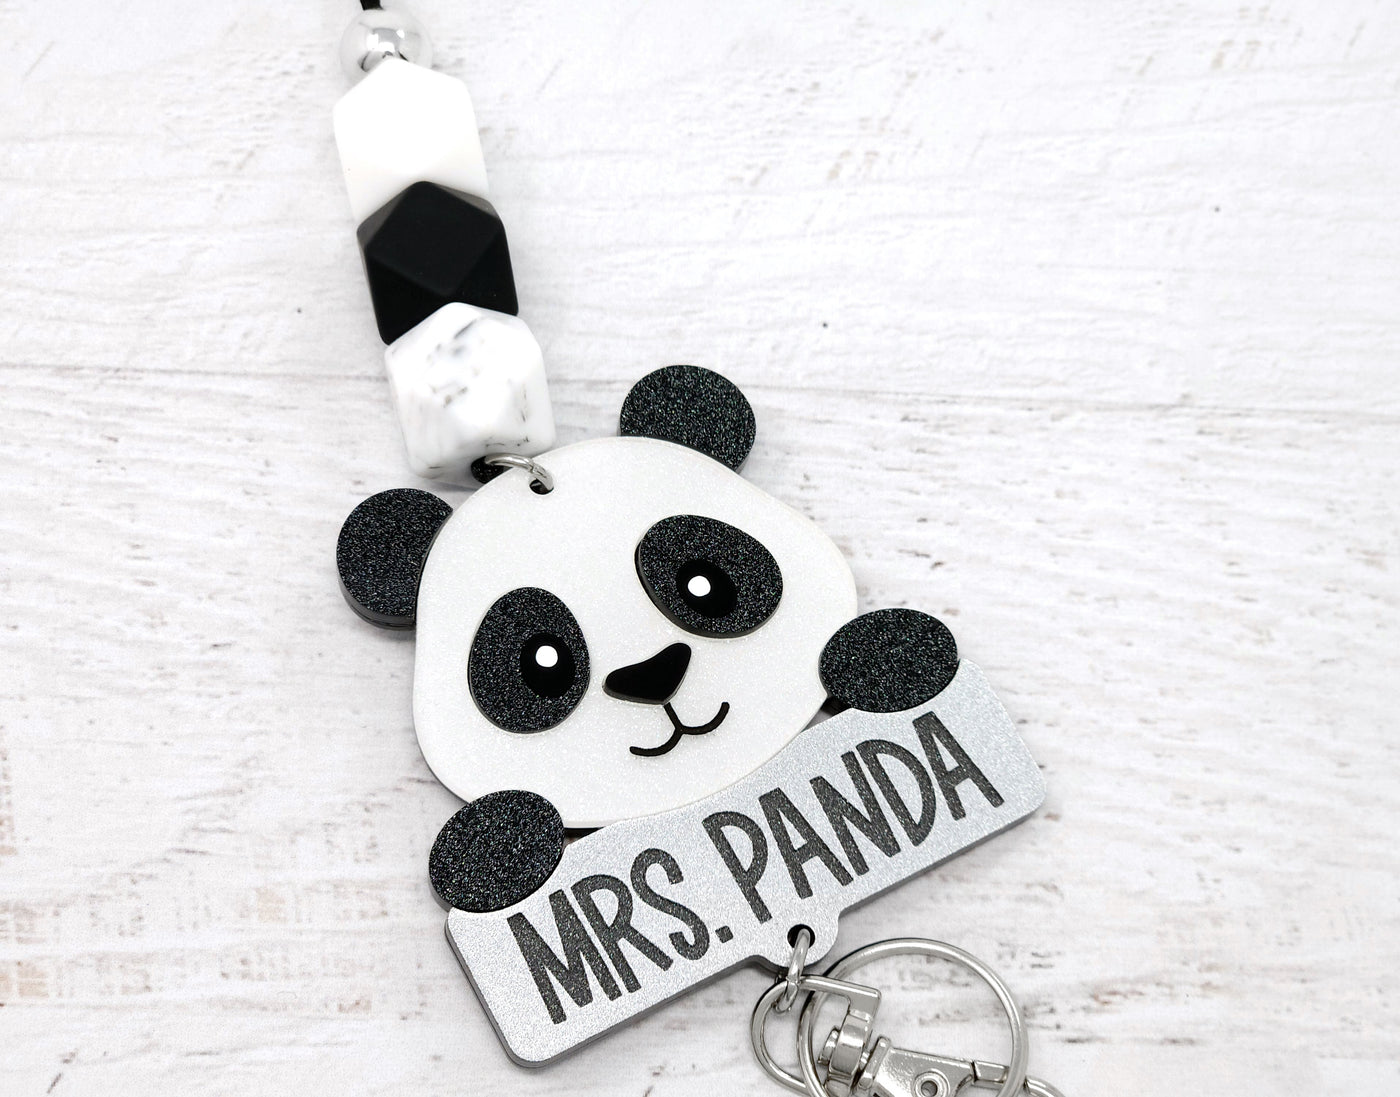 Personalized Acrylic Panda Lanyard